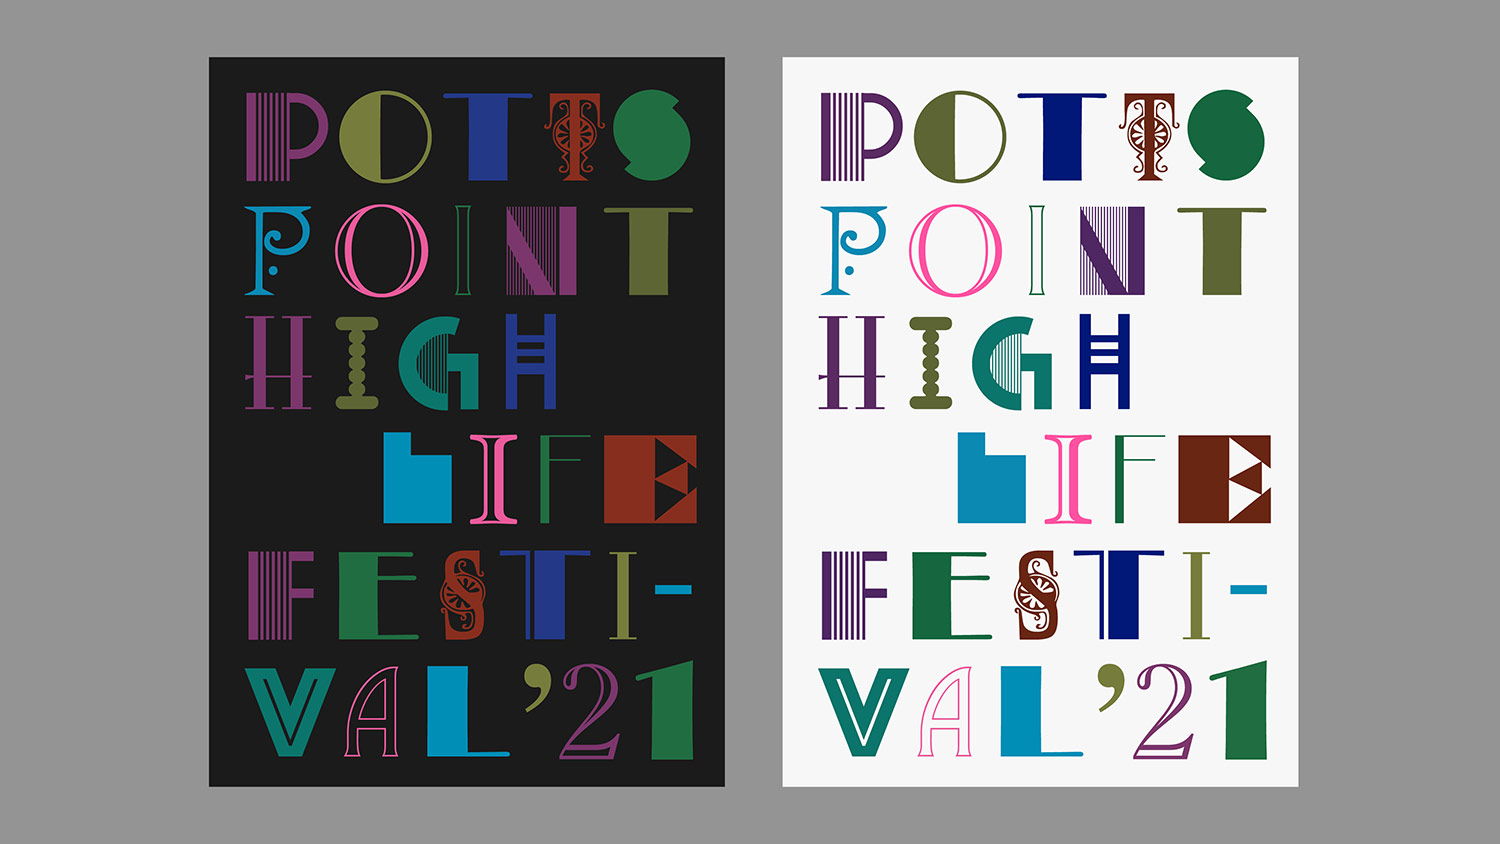 Potts Point High Life Festival Branding, 2020